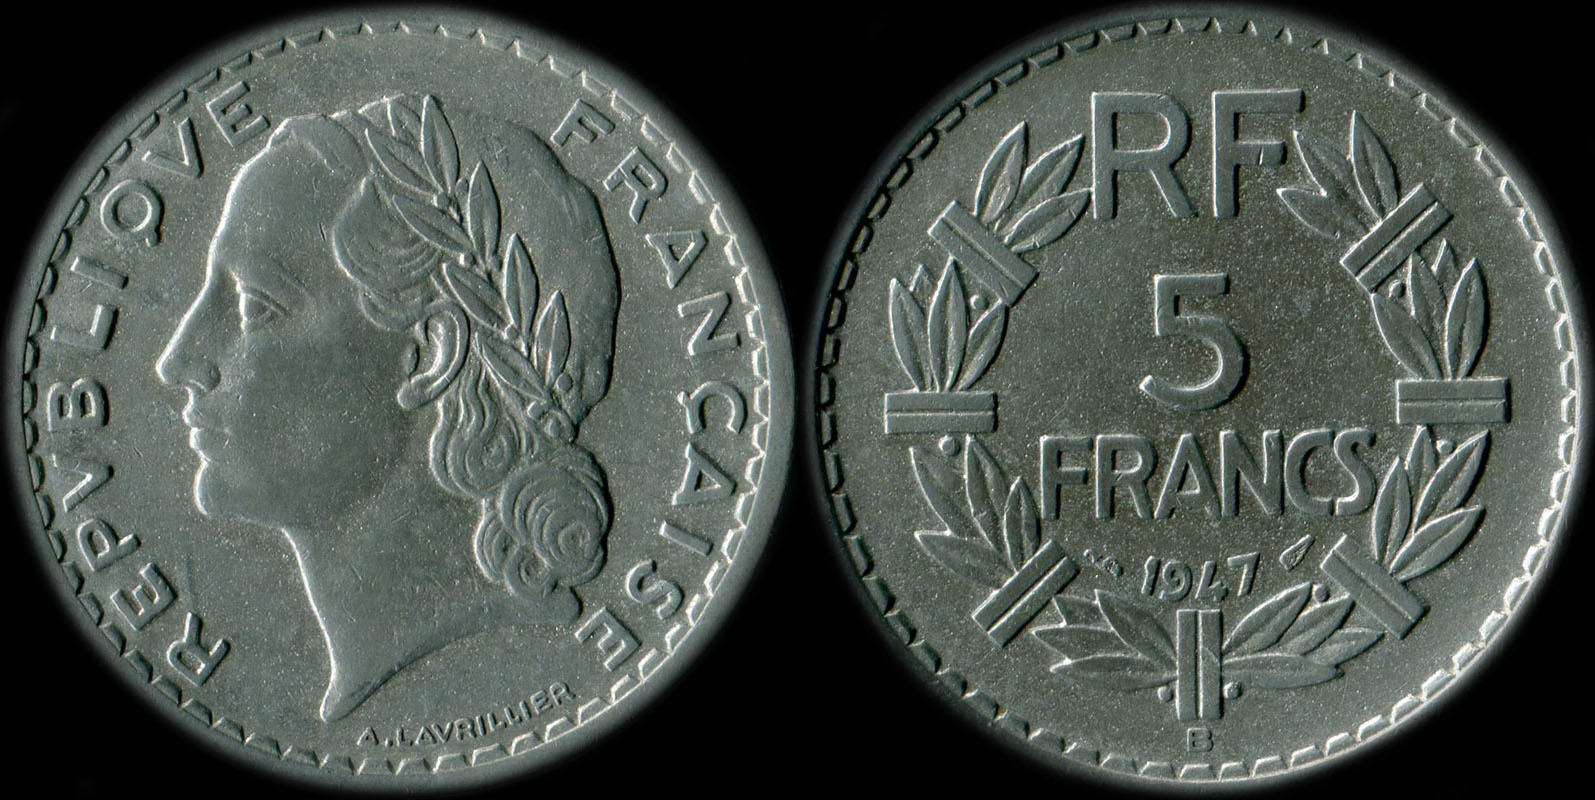 Pice de 5 francs Lavrillier 1947 aluminium avec 9 ouvert